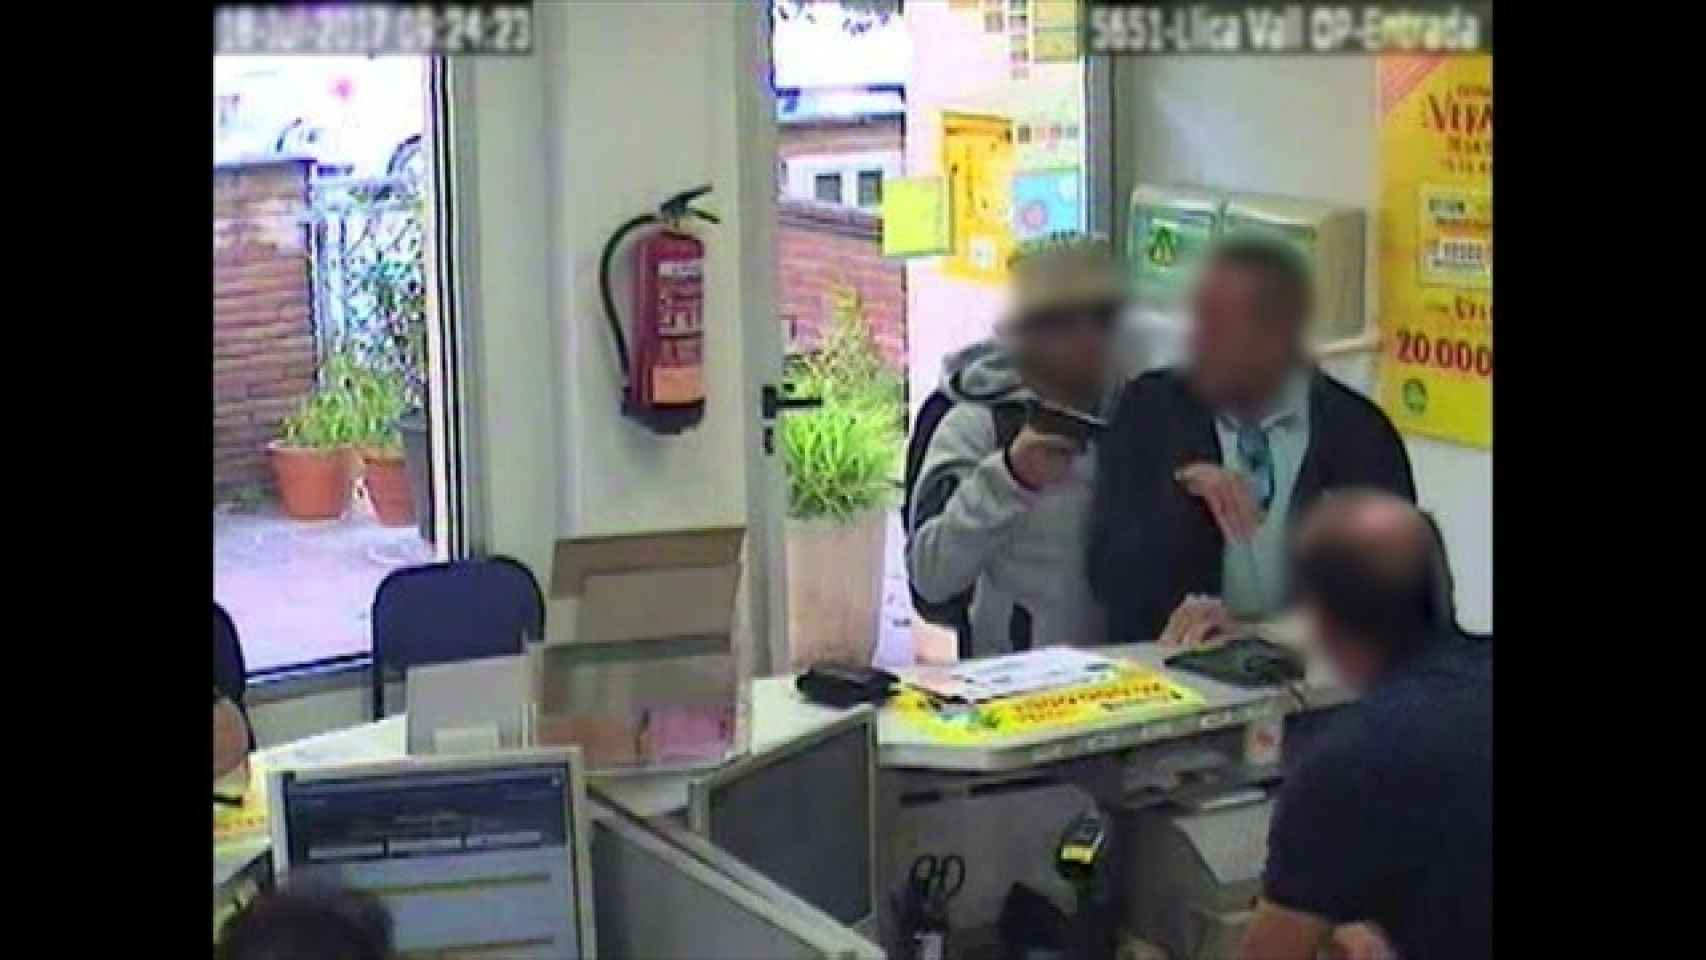 Ladrones chilenos robando en la oficina de Correos de Lliçà de Vall (Barcelona)